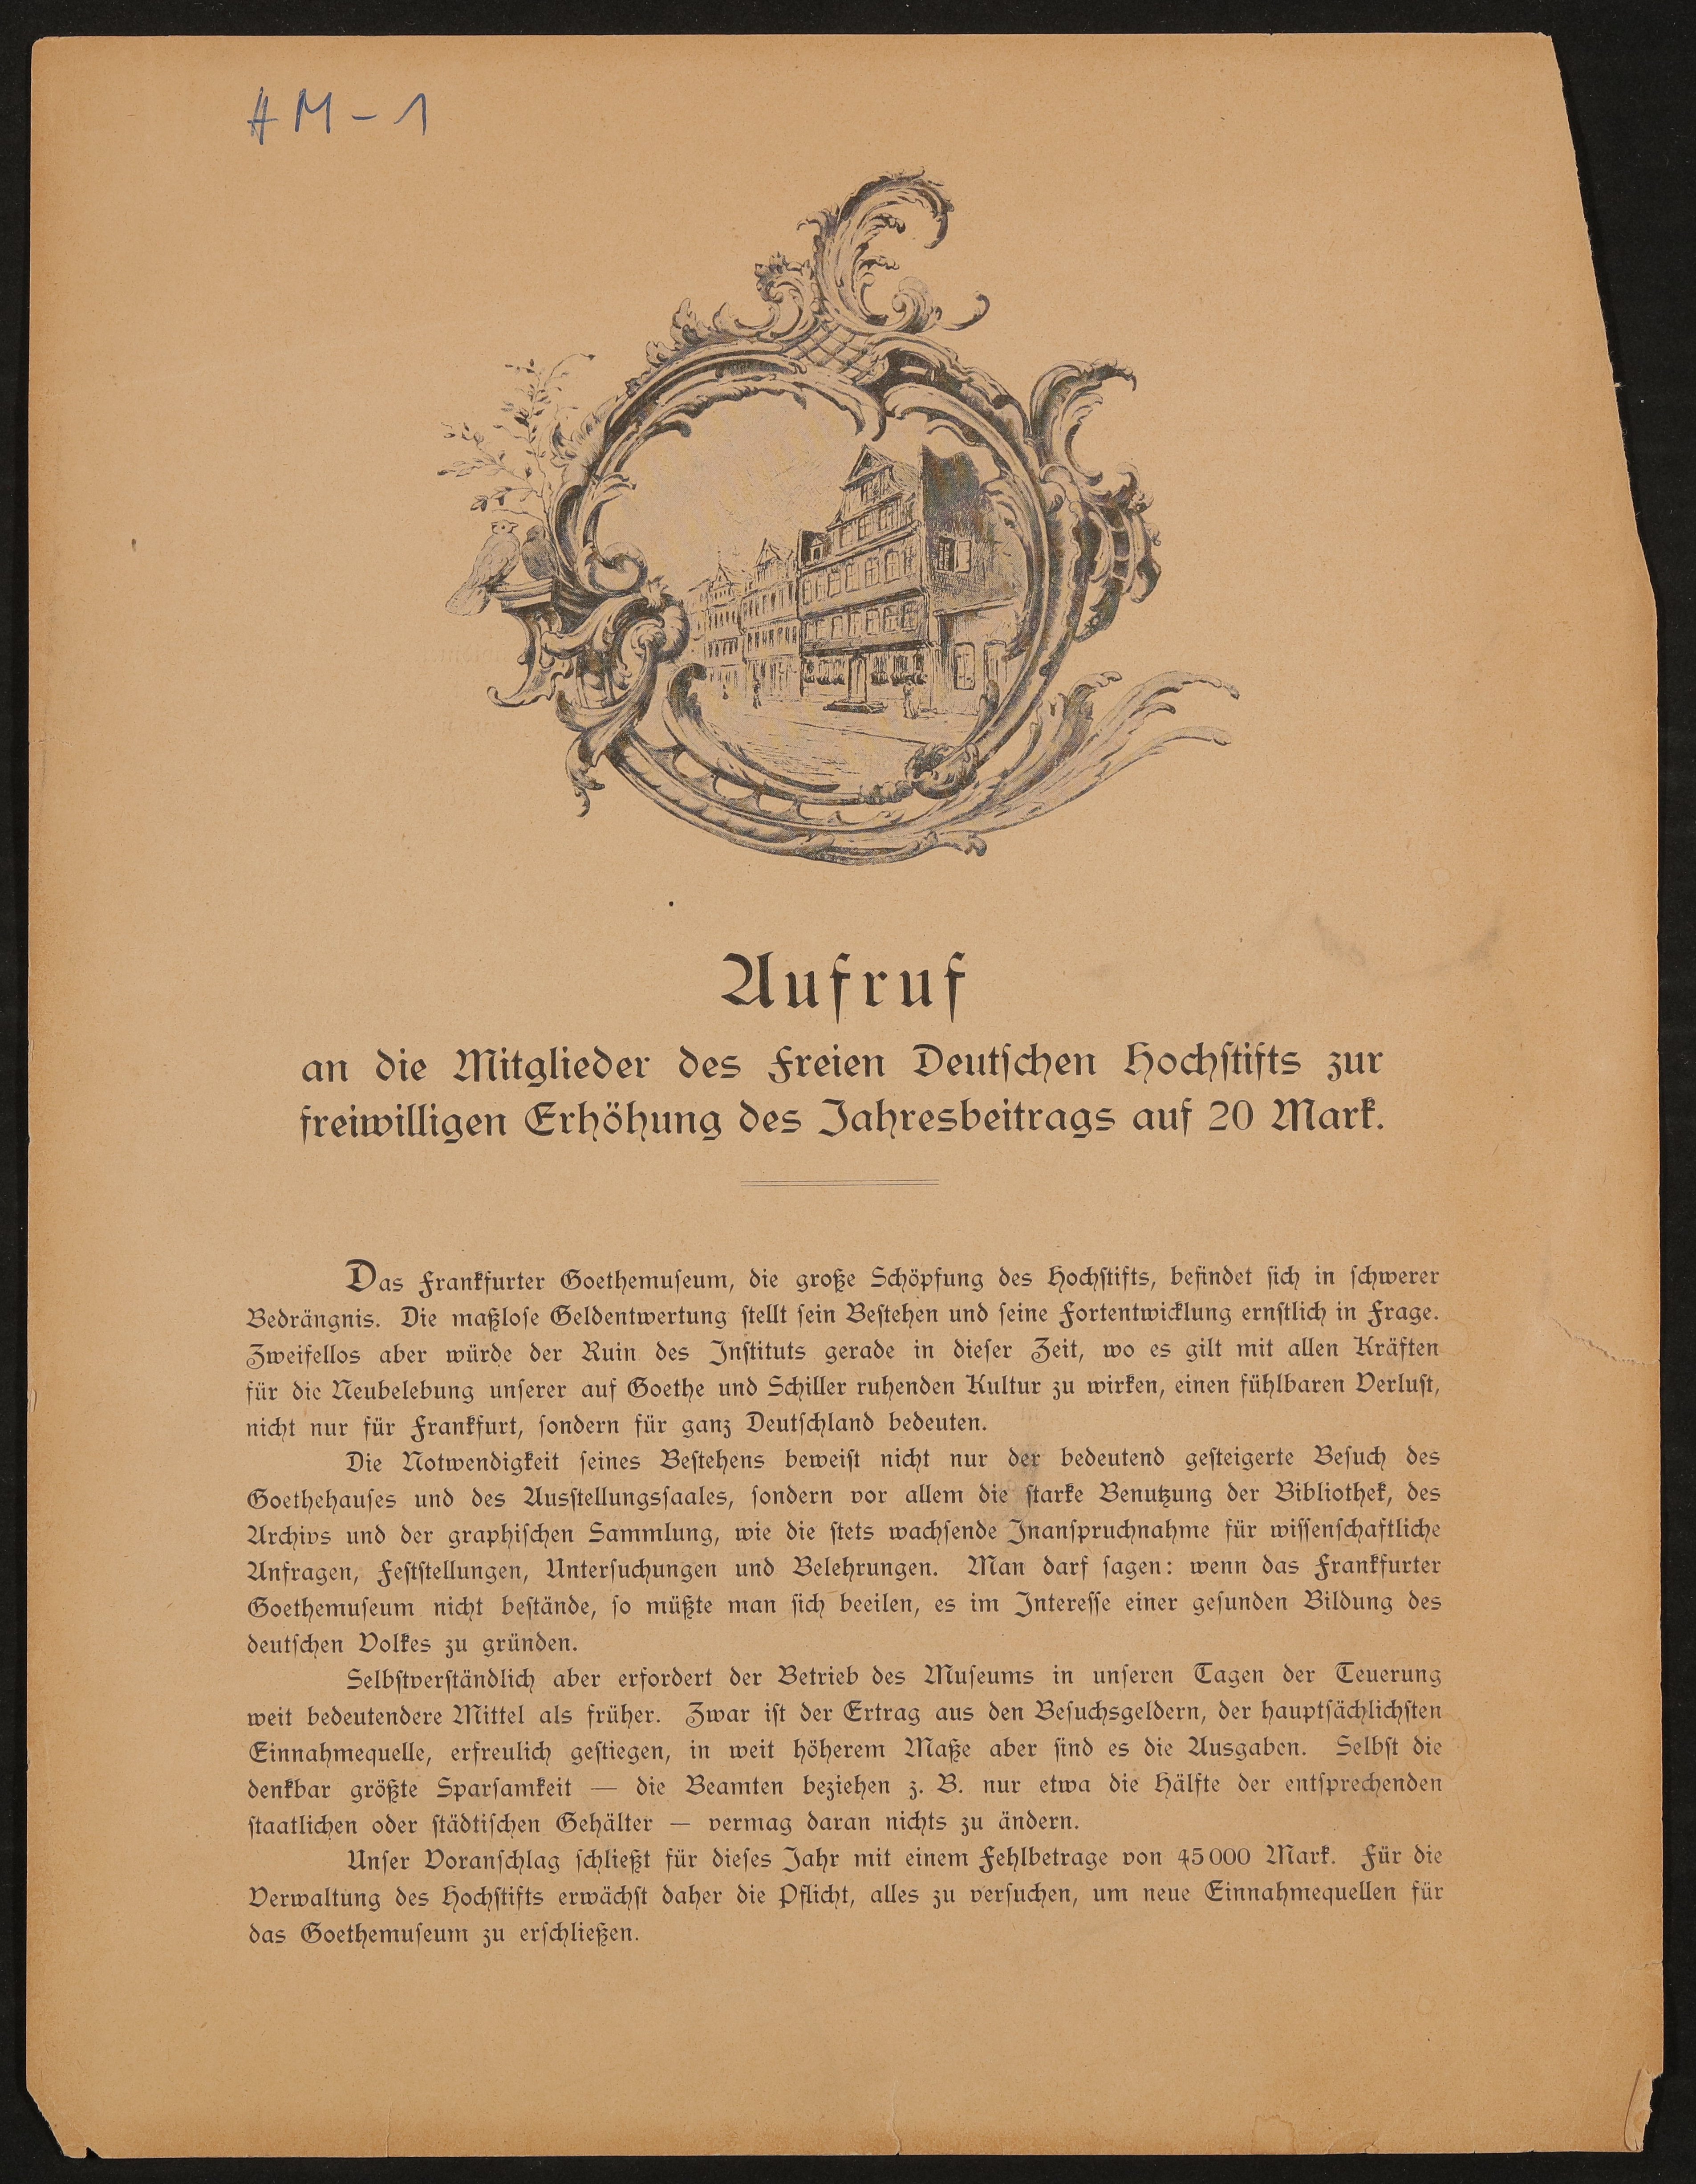 Aufruf an die Mitglieder des Freien Deutschen Hochstifts zur freiwilligen Erhöhung des Jahresbeitrags auf 20 Mark, um 1921 (Freies Deutsches Hochstift / Frankfurter Goethe-Museum Public Domain Mark)